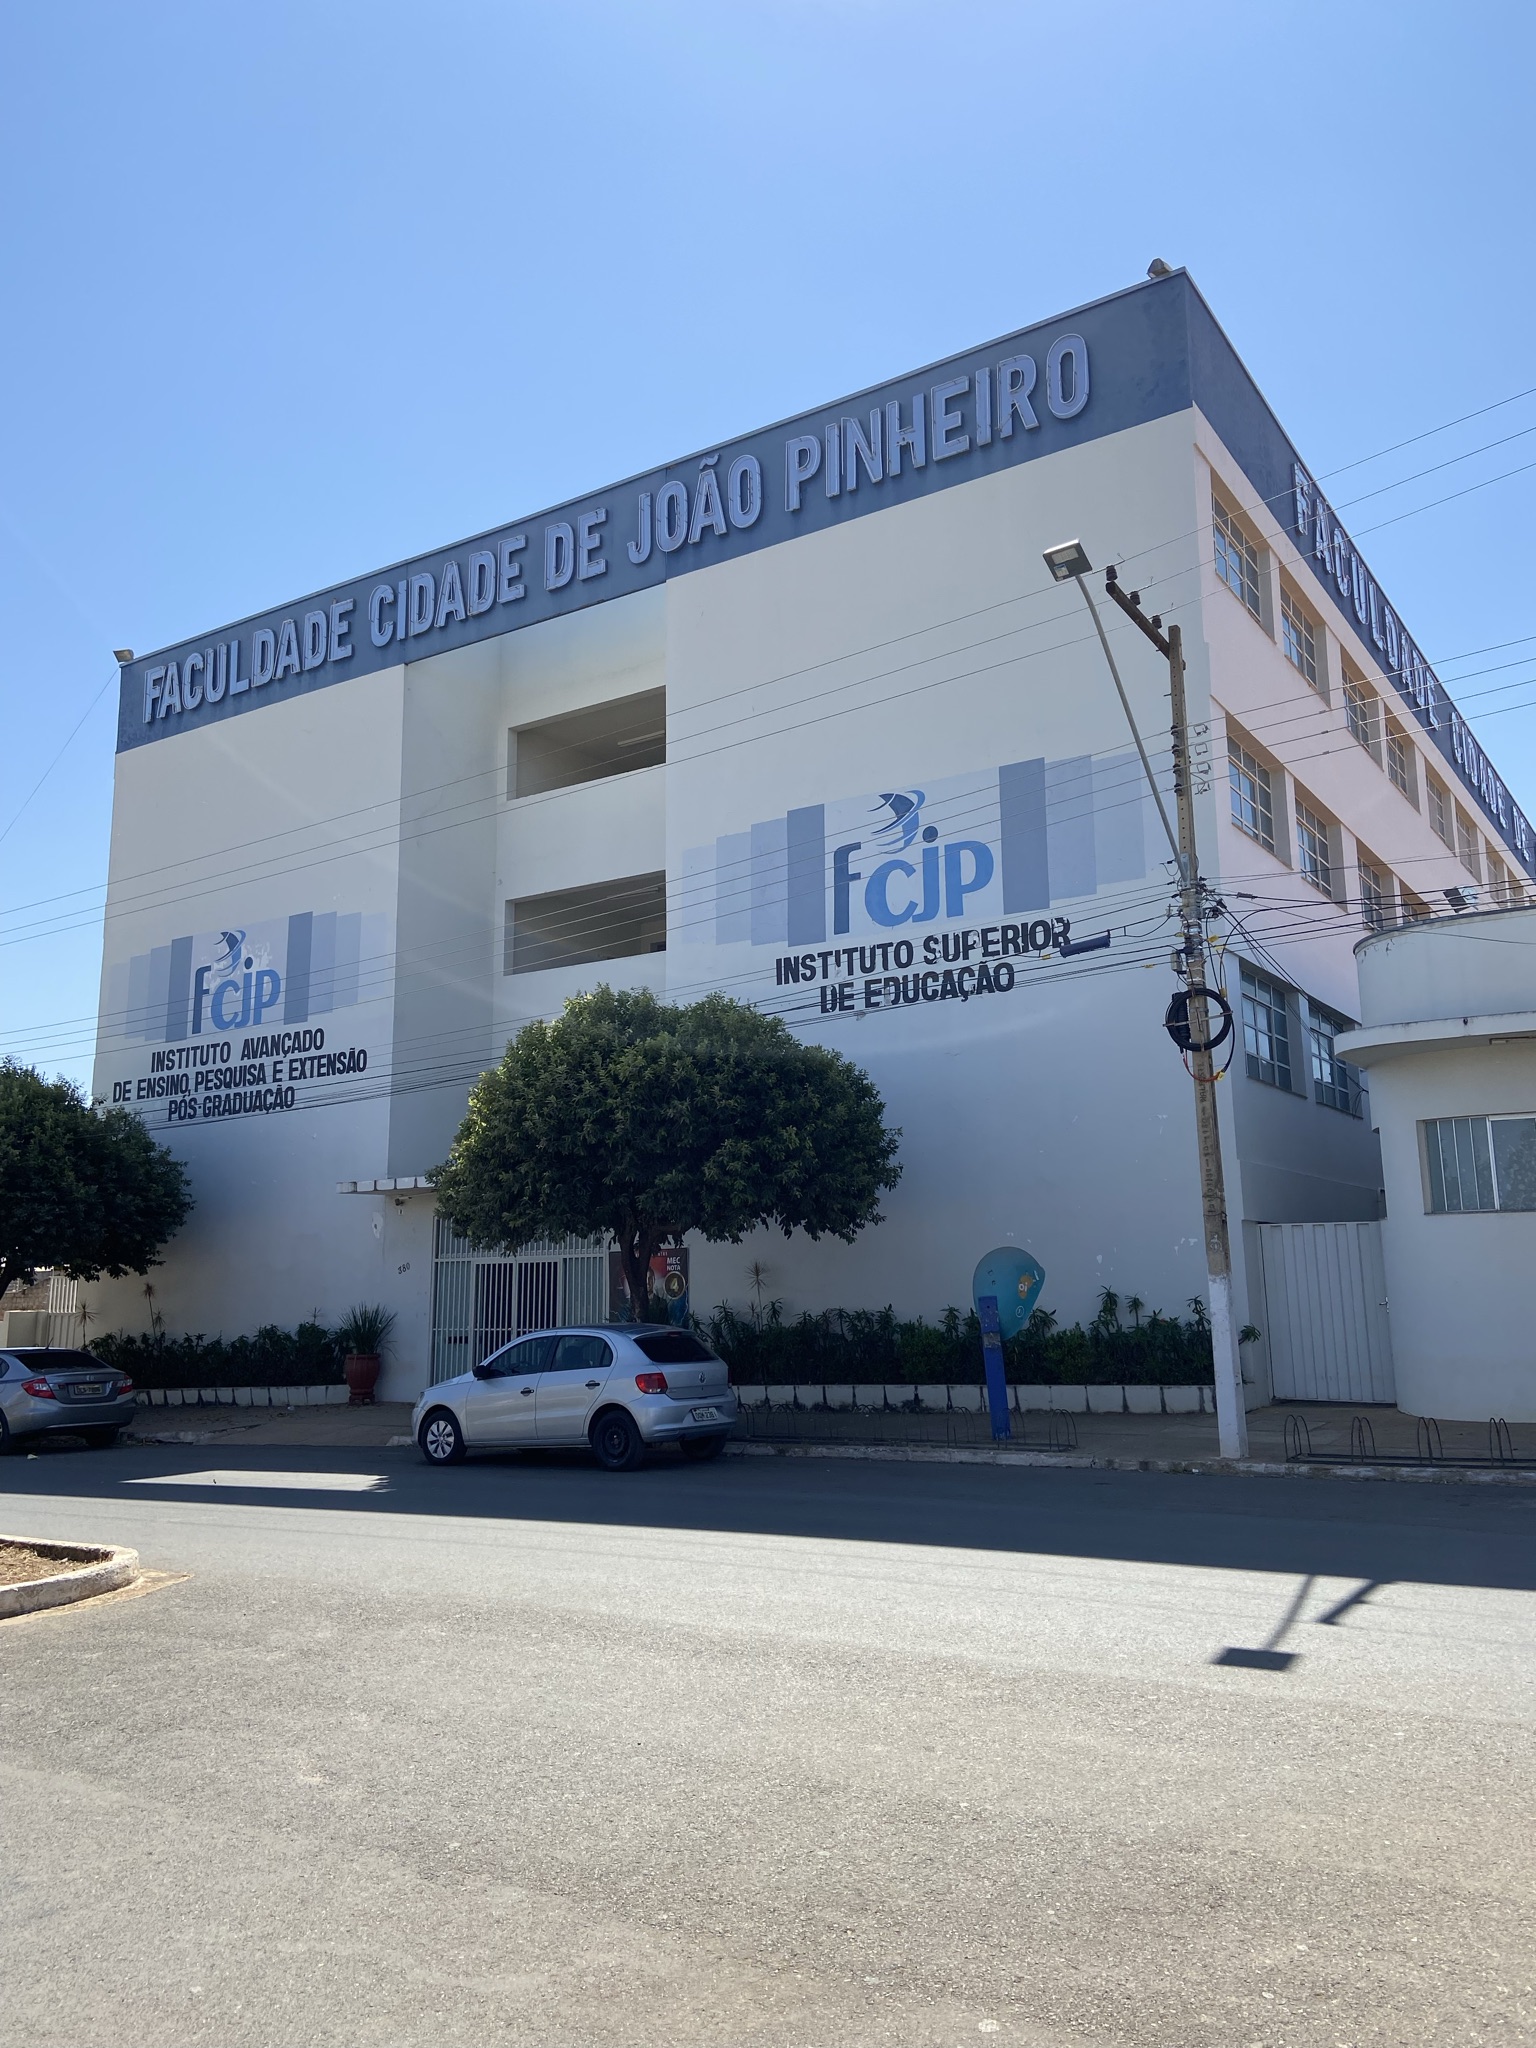 Faculdade de Direito da UFMG - Centro - Av. João Pinheiro, 100